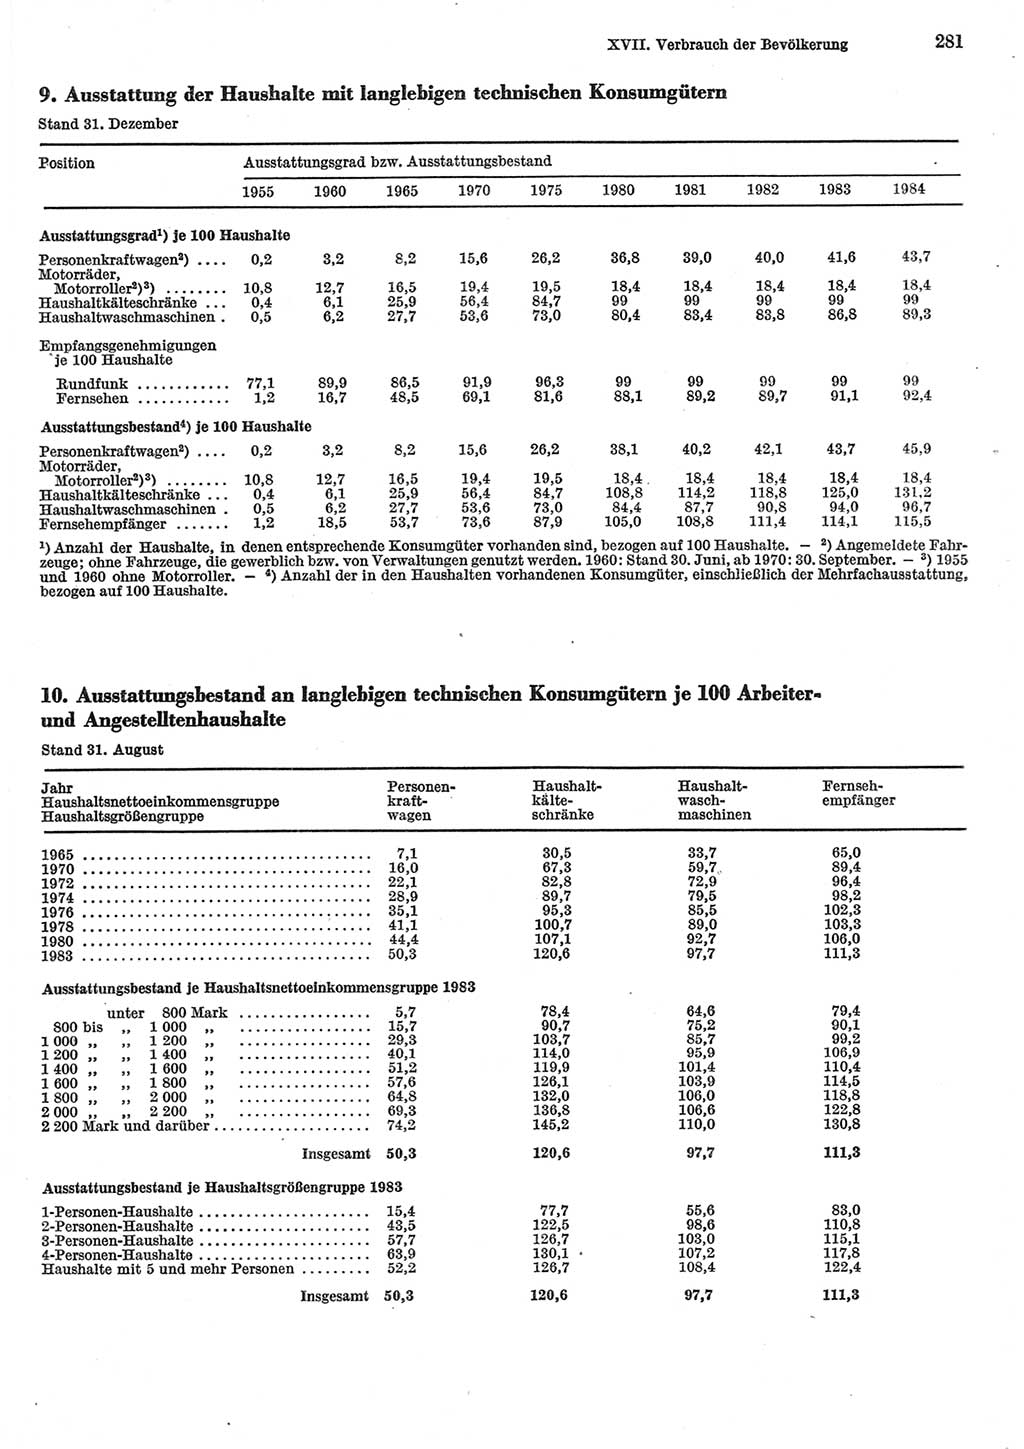 Statistisches Jahrbuch der Deutschen Demokratischen Republik (DDR) 1985, Seite 281 (Stat. Jb. DDR 1985, S. 281)